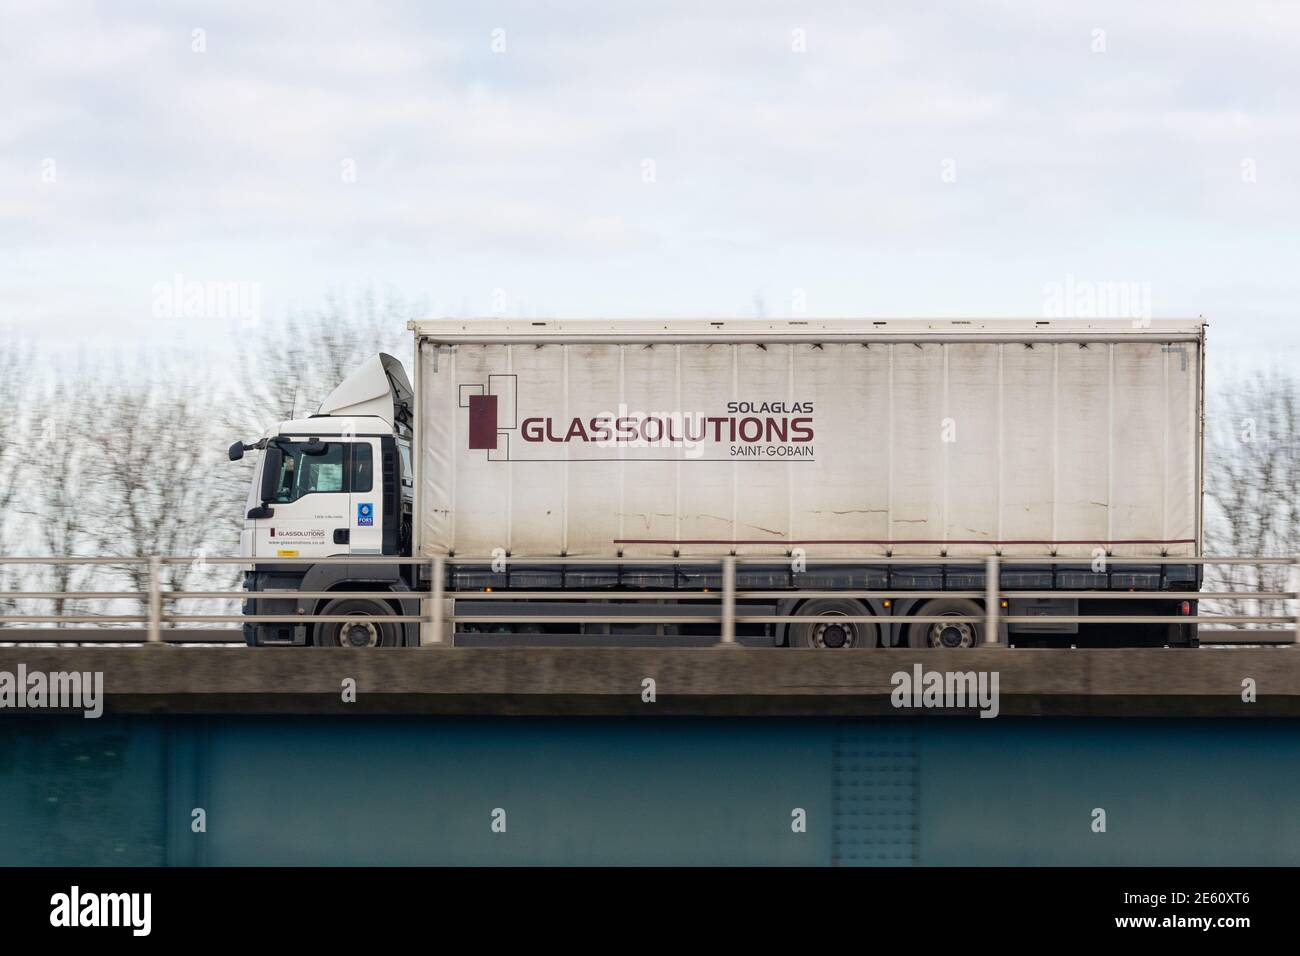 Camion de livraison Solagla Glassolitions - Écosse, Royaume-Uni Banque D'Images